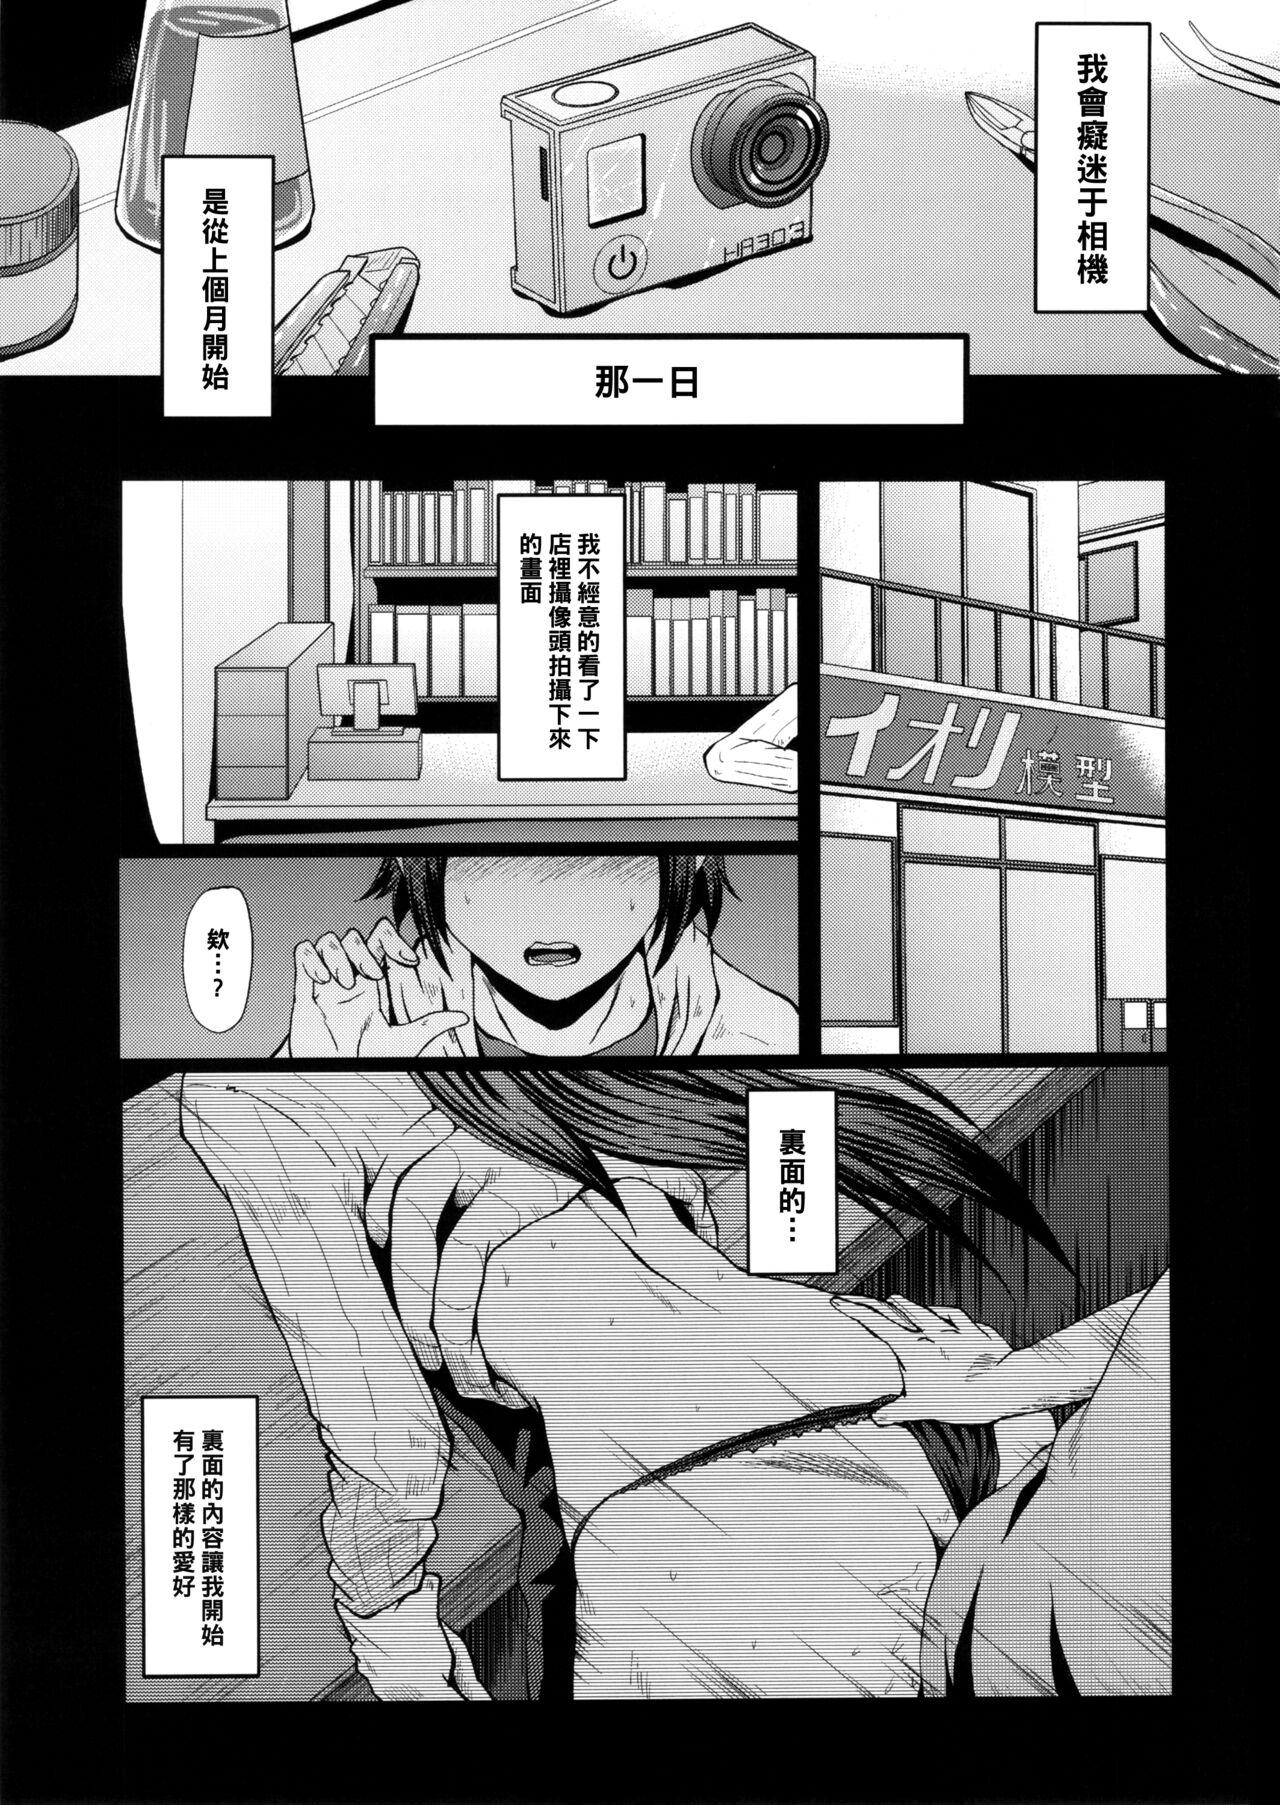 Urabambi Vol. 49 Kaa-san wa Boku ga Shiranai Uchi ni Omanko ni DoHamari shite mashita. 3